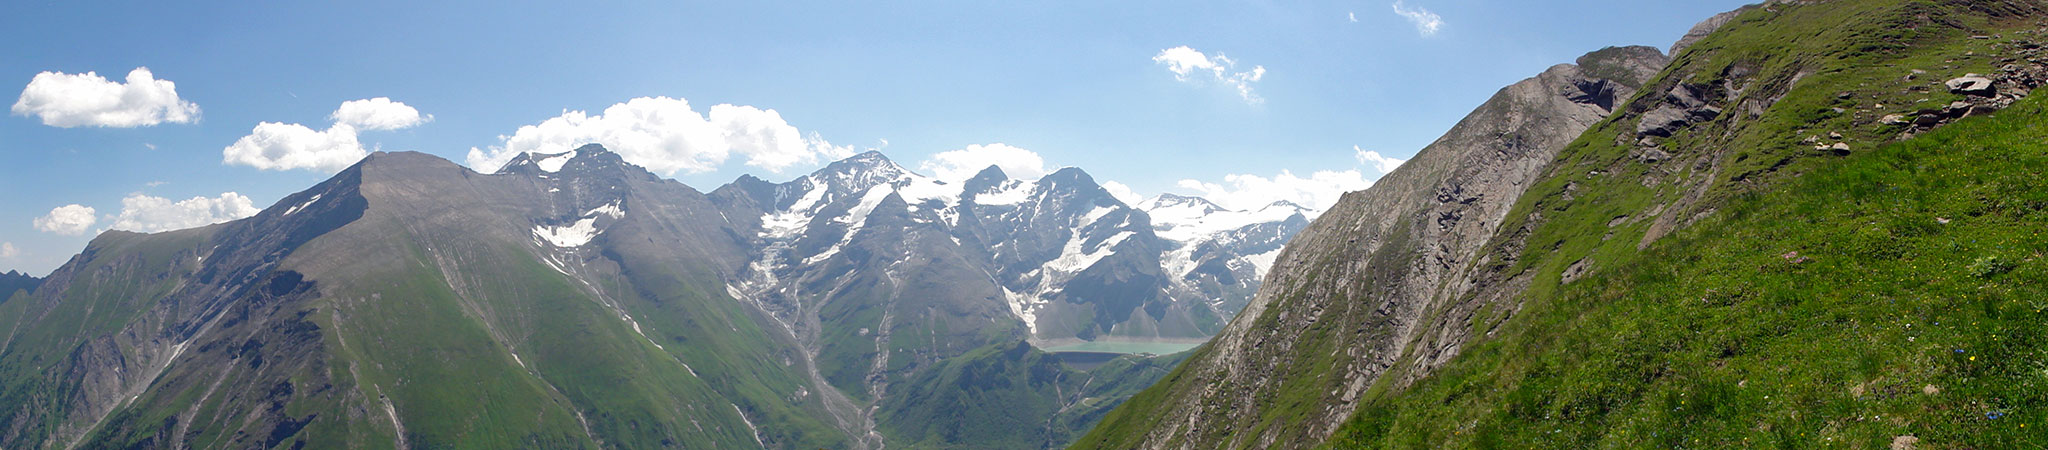 Arnoweg: Blick zurück auf die Hochgebirgsstauseen Kaprun und das Große Wiesbachhorn